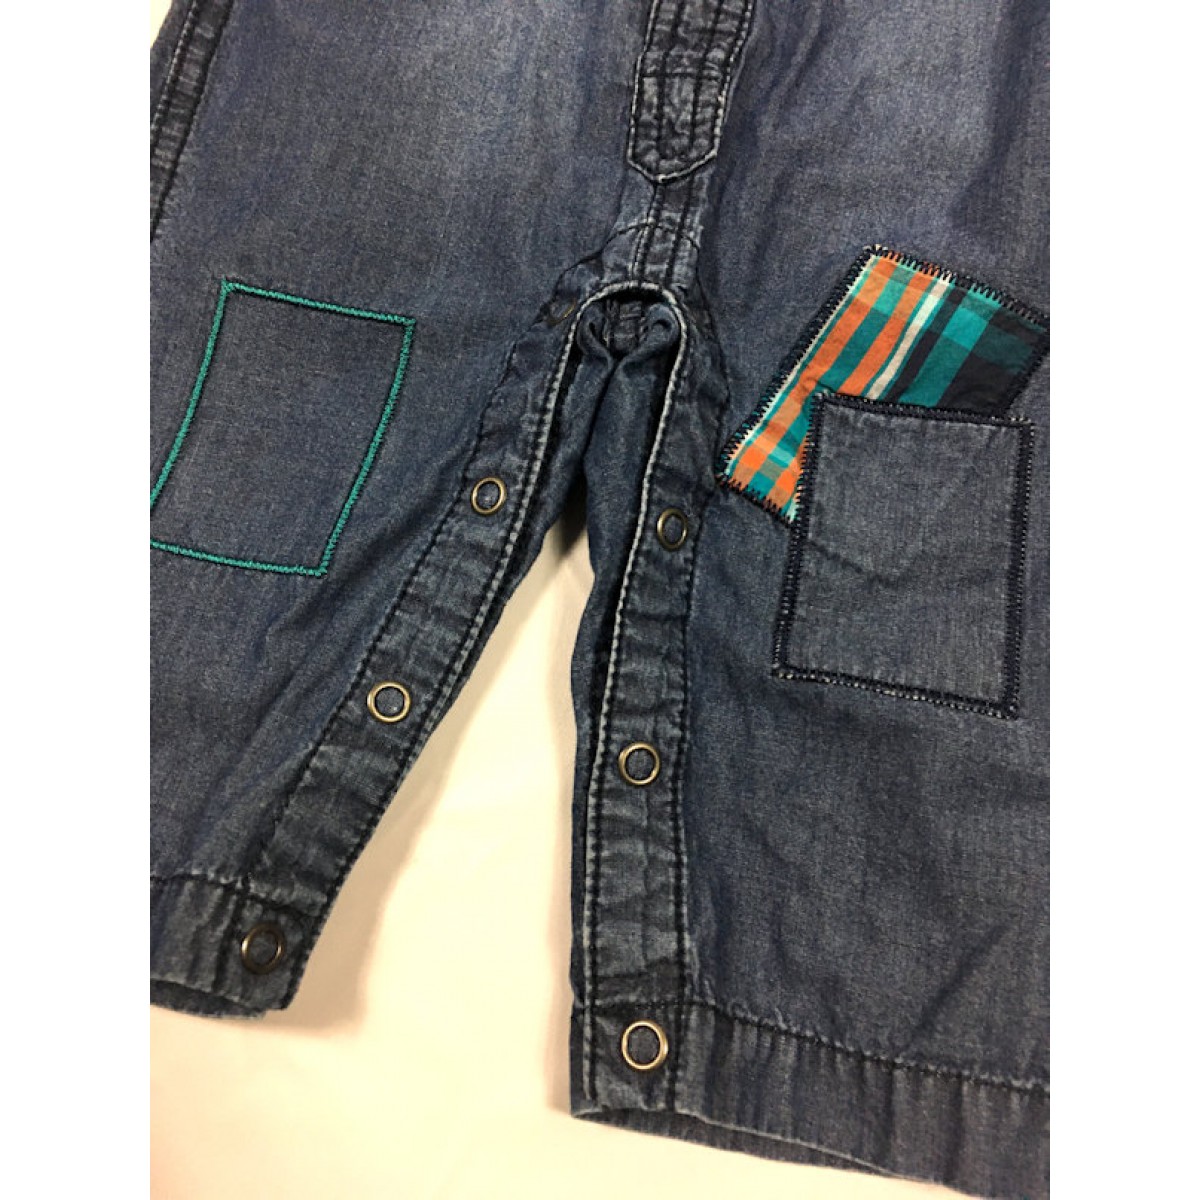 jumper style jeans souris mini / 6-9 mois